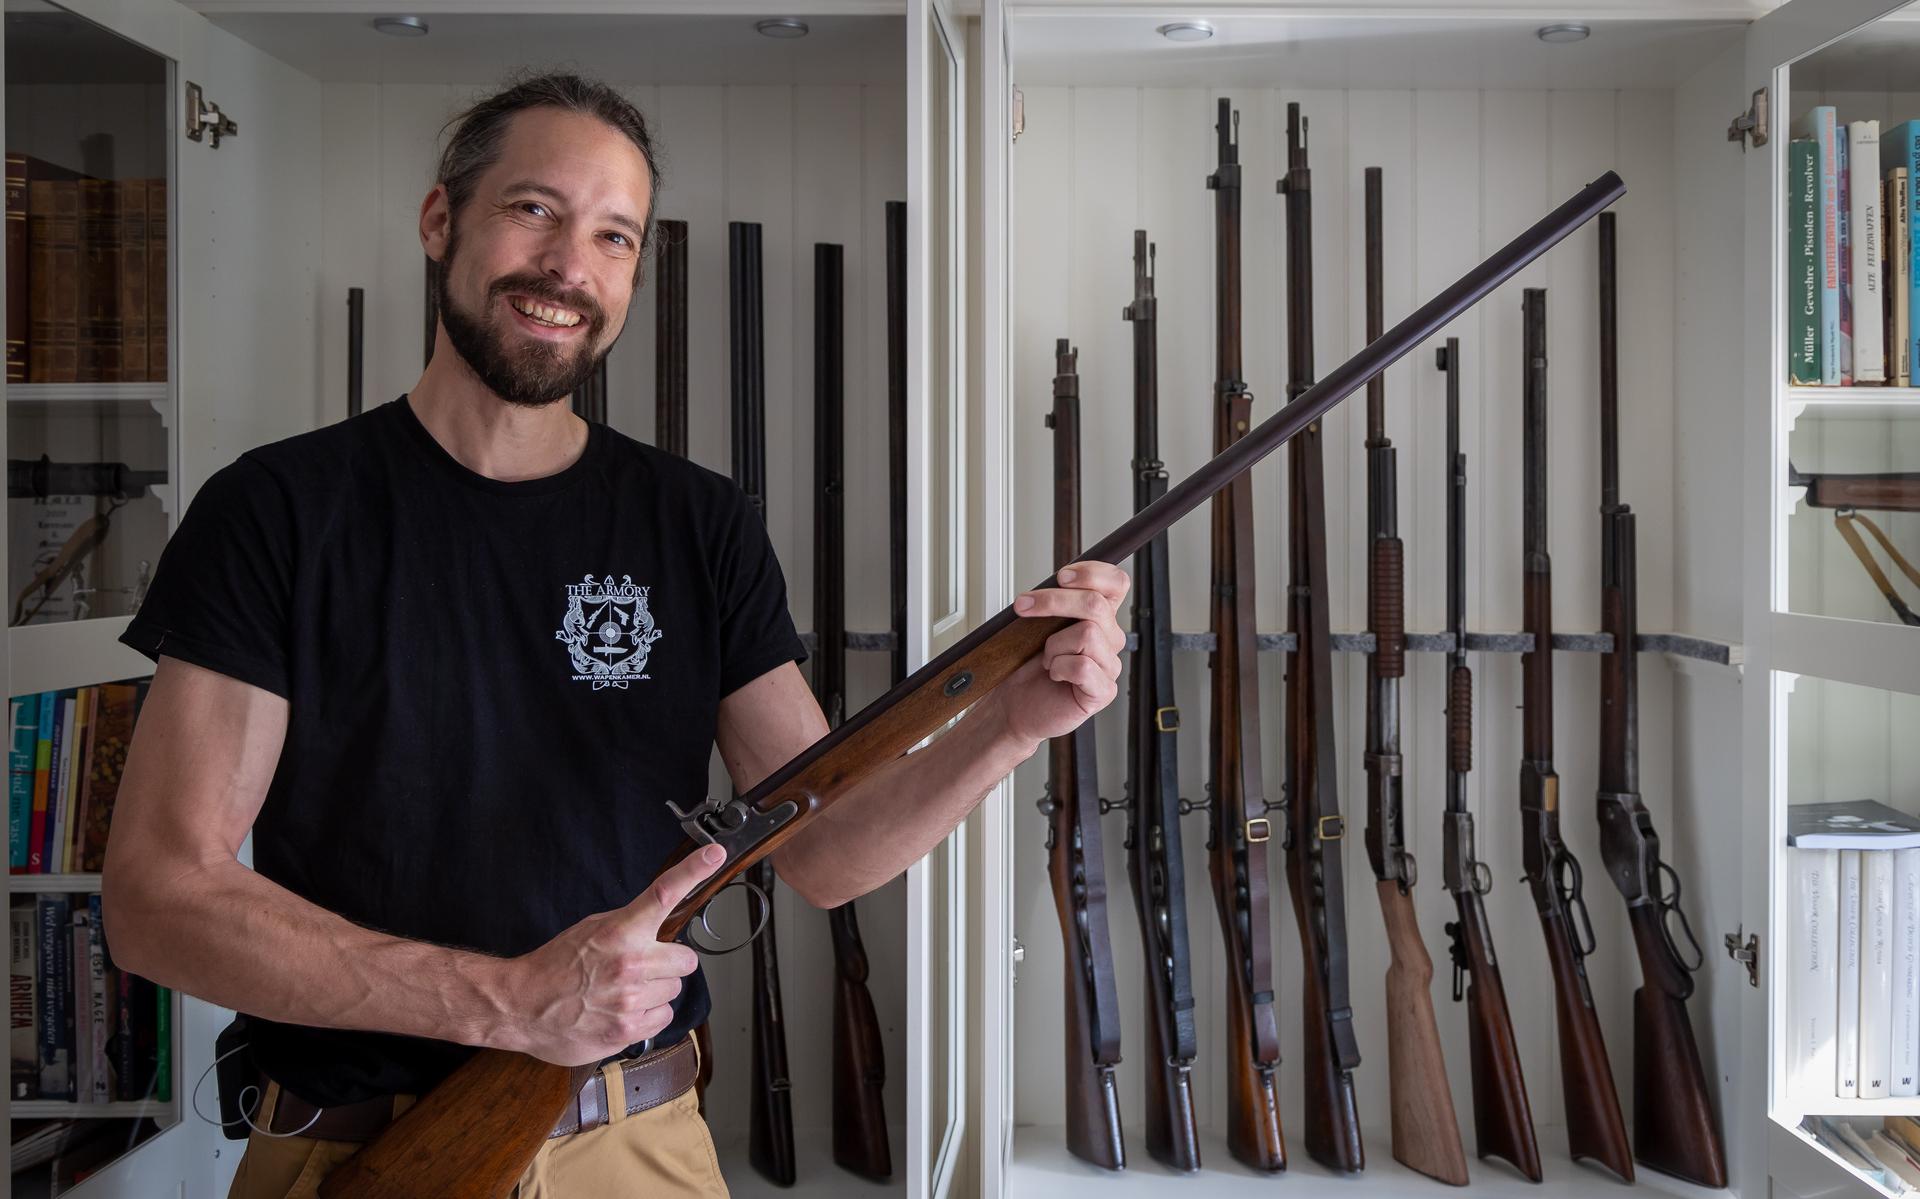 Nap de Hoogeveen verfügt über eine Sammlung historischer Waffen und weiß, wie man damit schießt.  „Die Kugeln mache ich selbst“